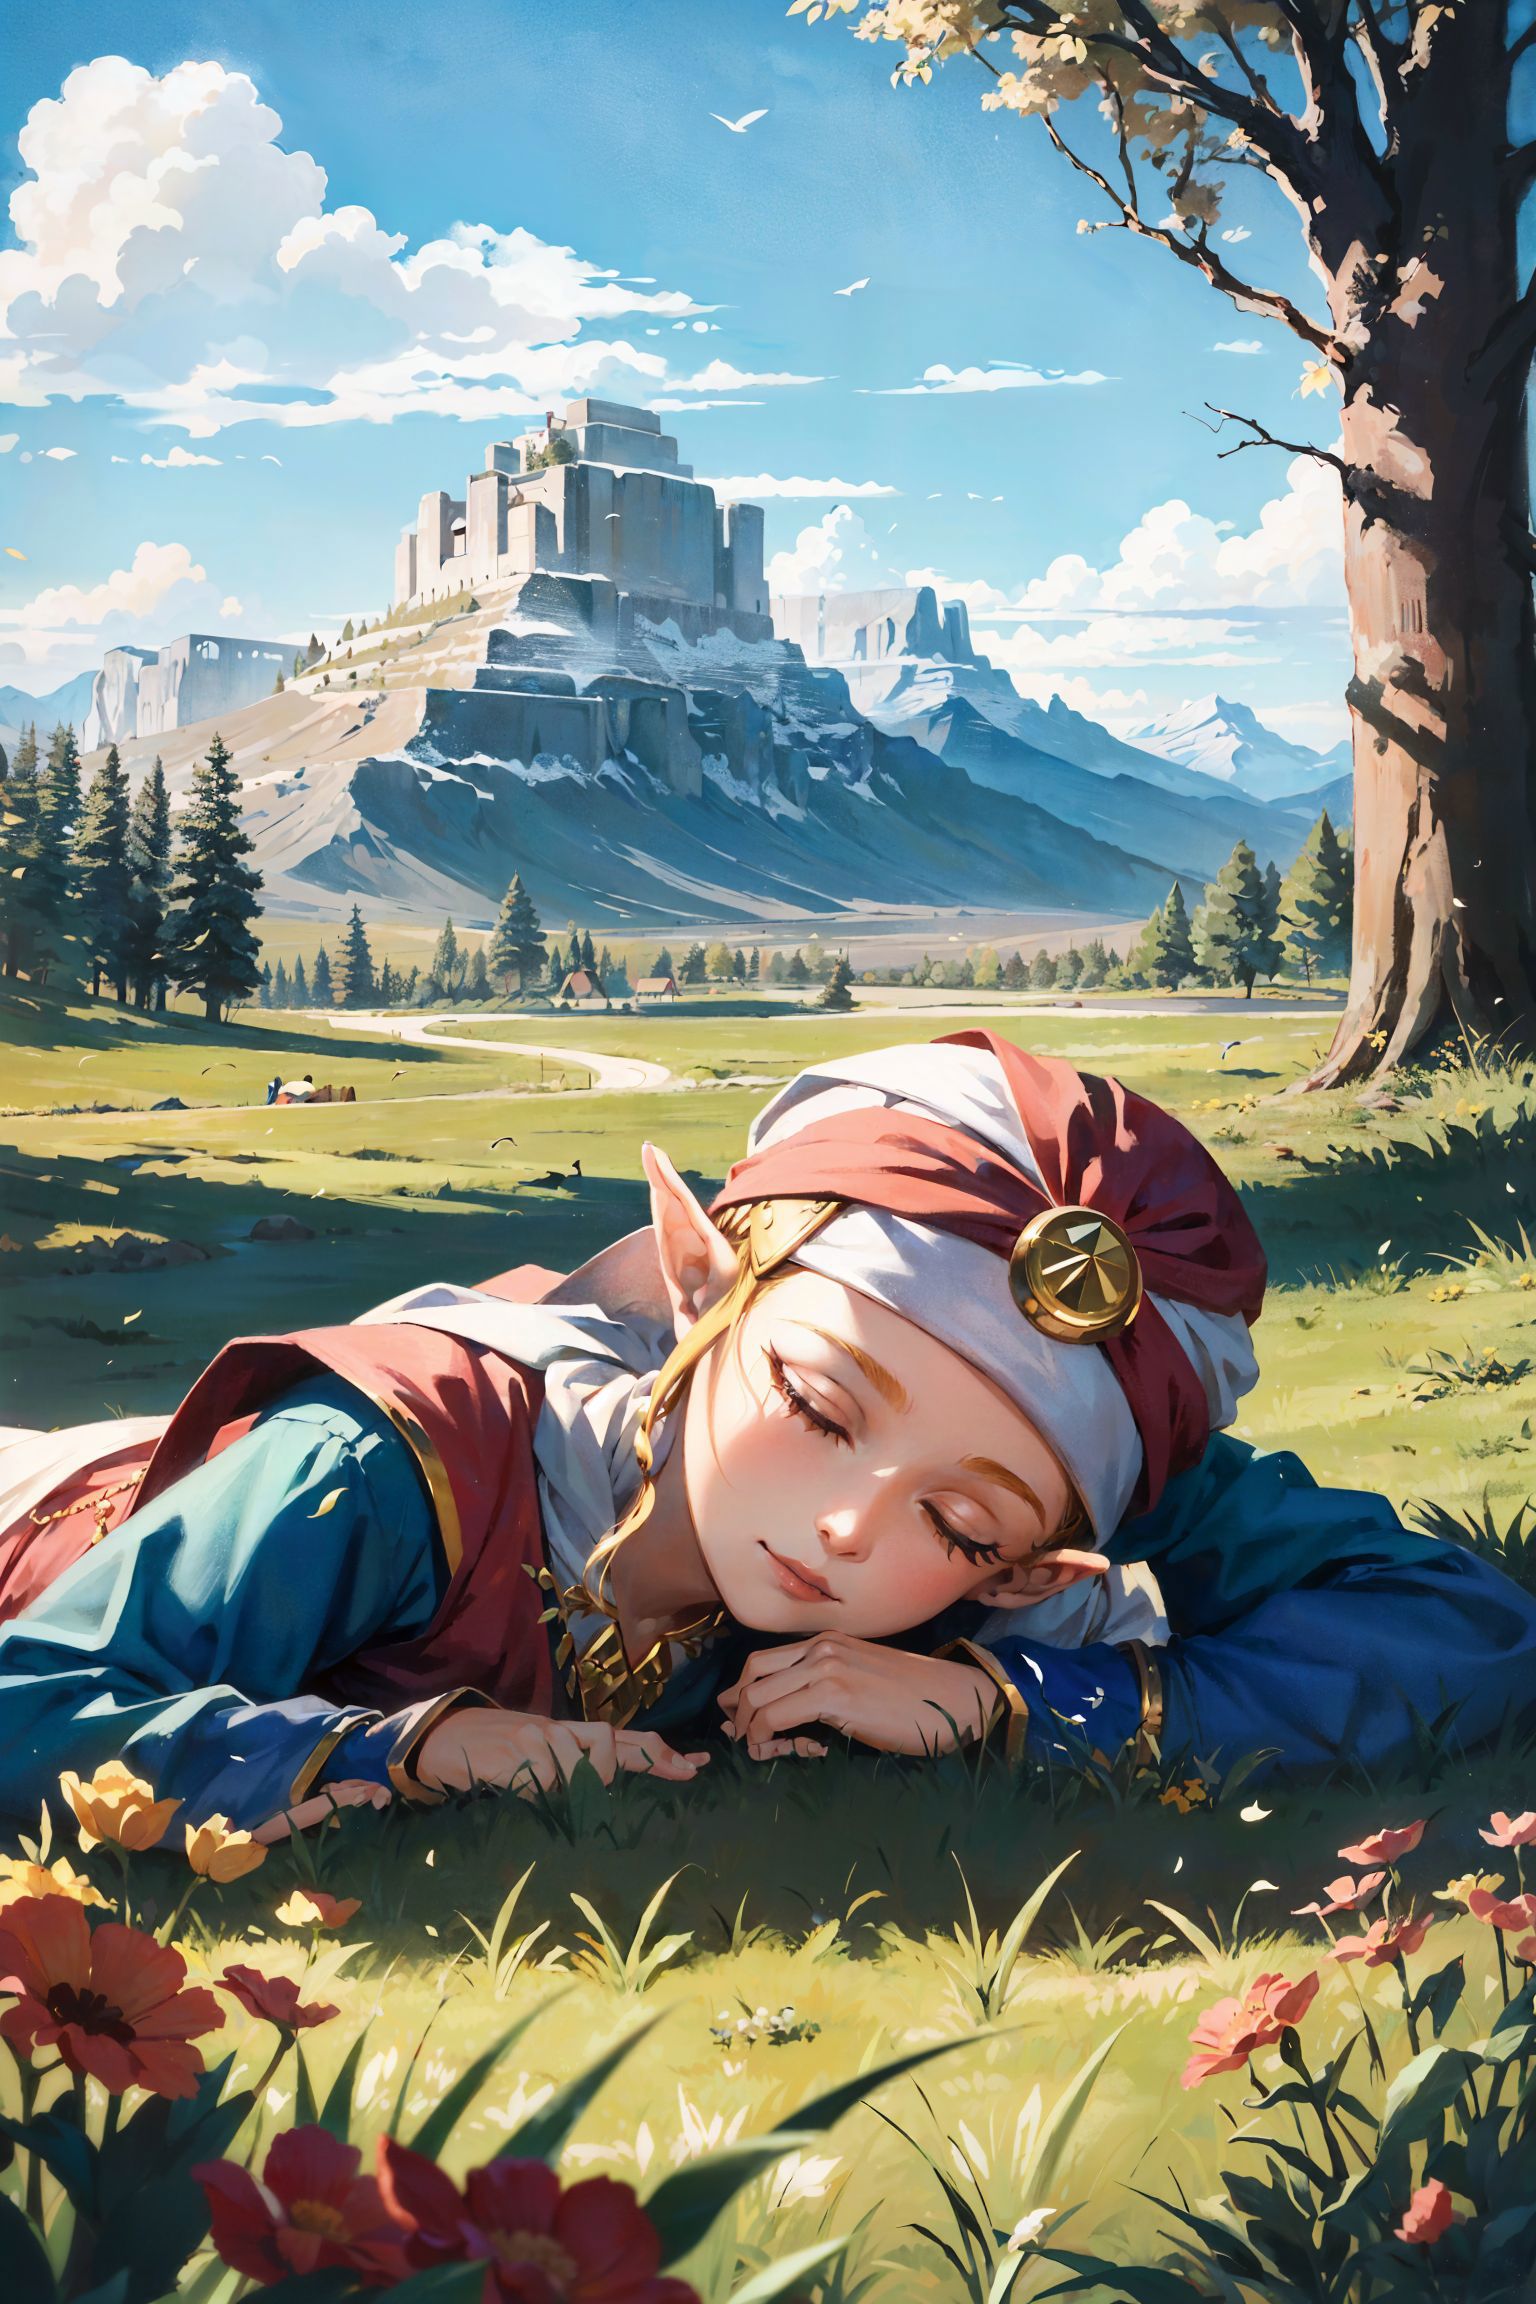 Young Zelda (OoT) image by Arnike